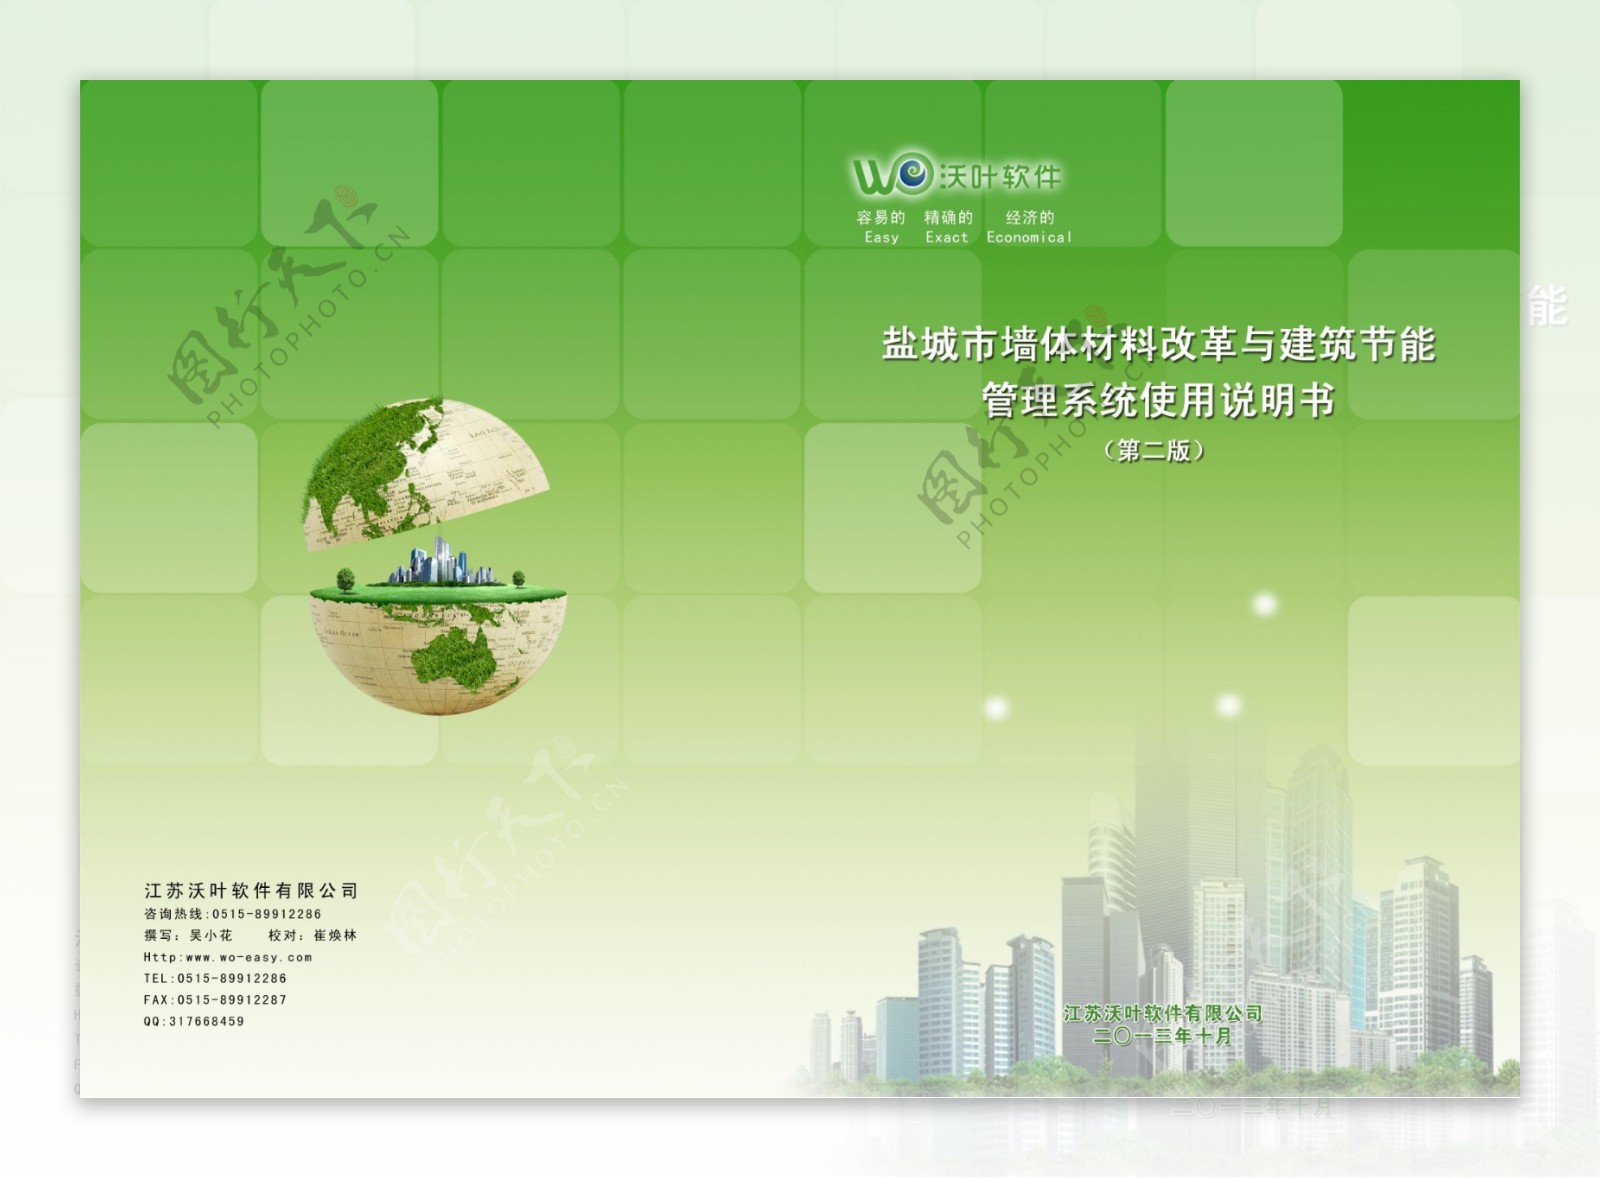 江苏沃叶软件封面图片